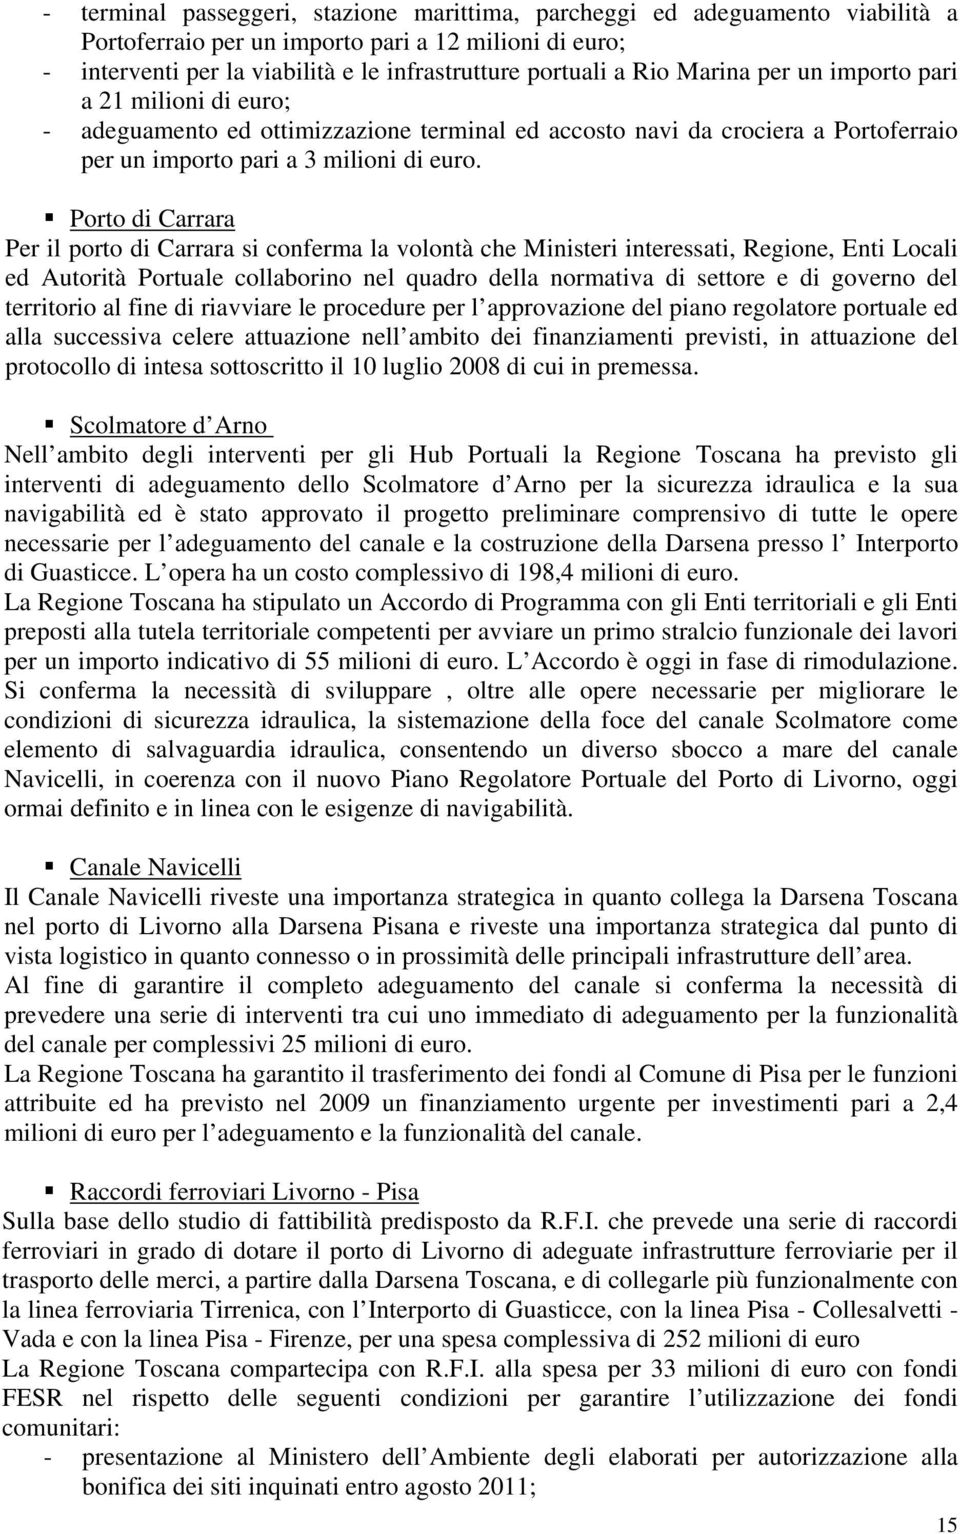 Porto di Carrara Per il porto di Carrara si conferma la volontà che Ministeri interessati, Regione, Enti Locali ed Autorità Portuale collaborino nel quadro della normativa di settore e di governo del